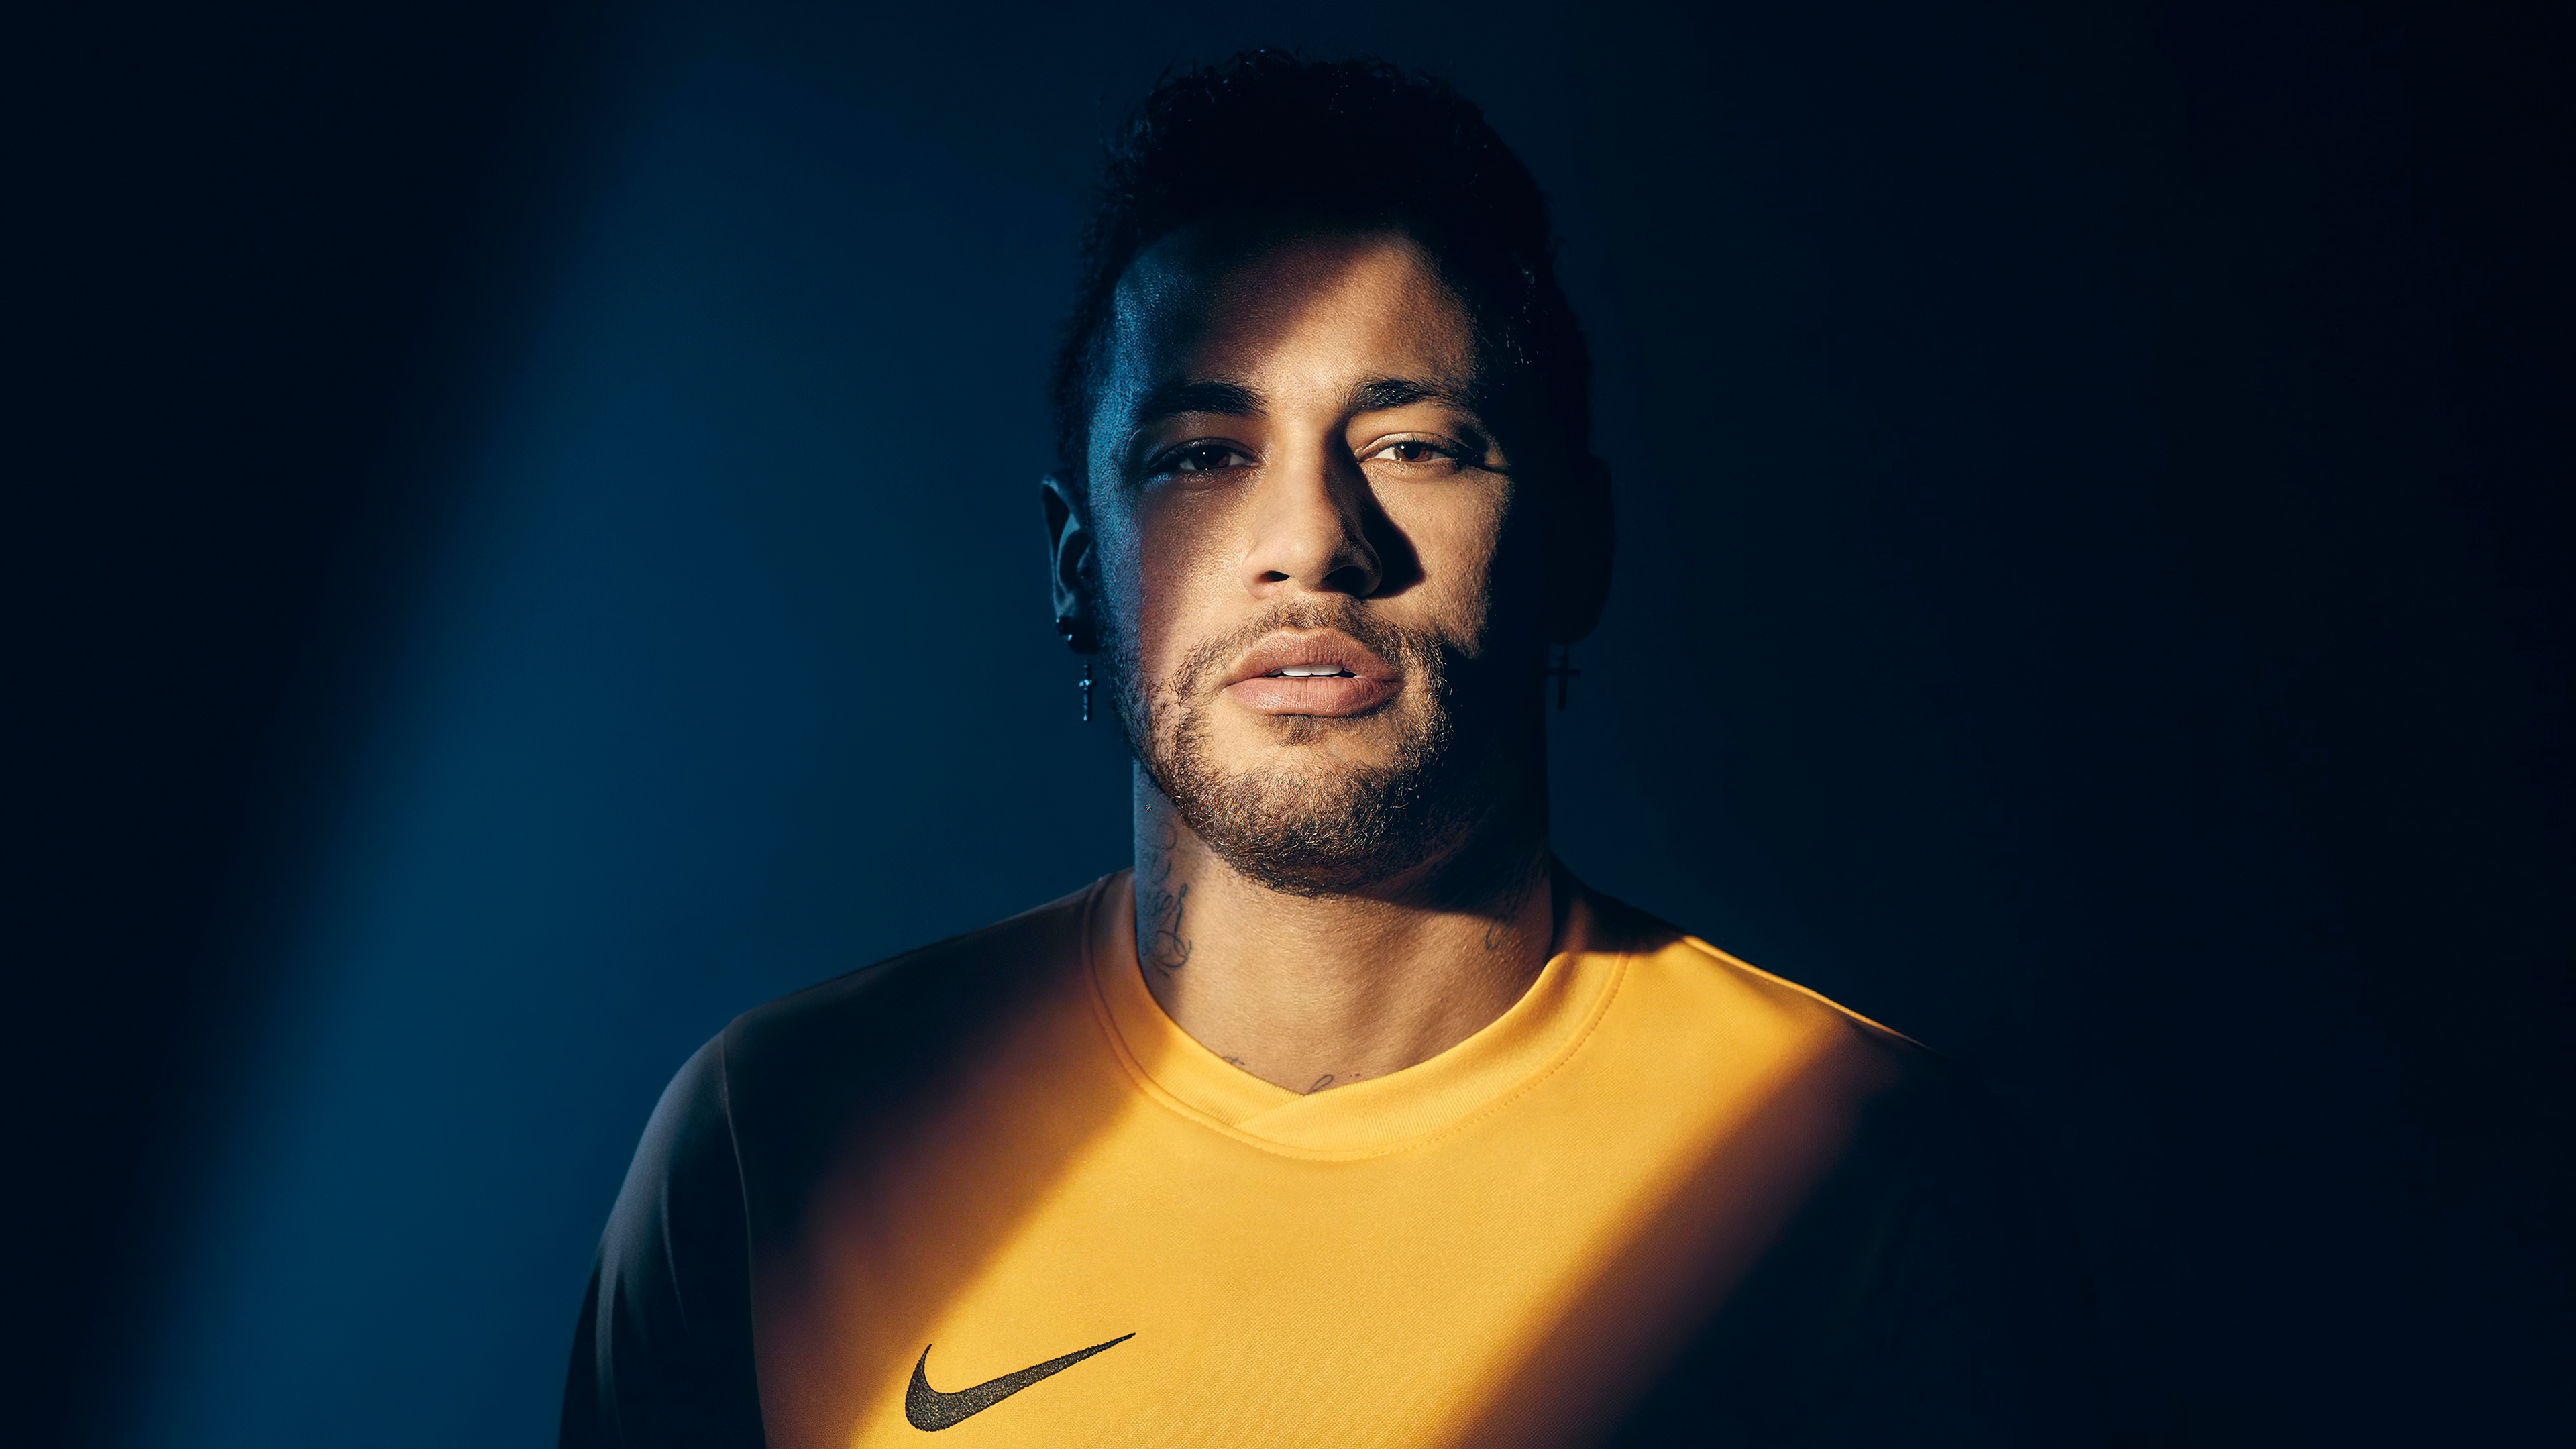 neymar 2023 4k 1642252892 - Neymar 2023 4k - Neymar 2023 wallpapers, Neymar 2023 4k wallpapers